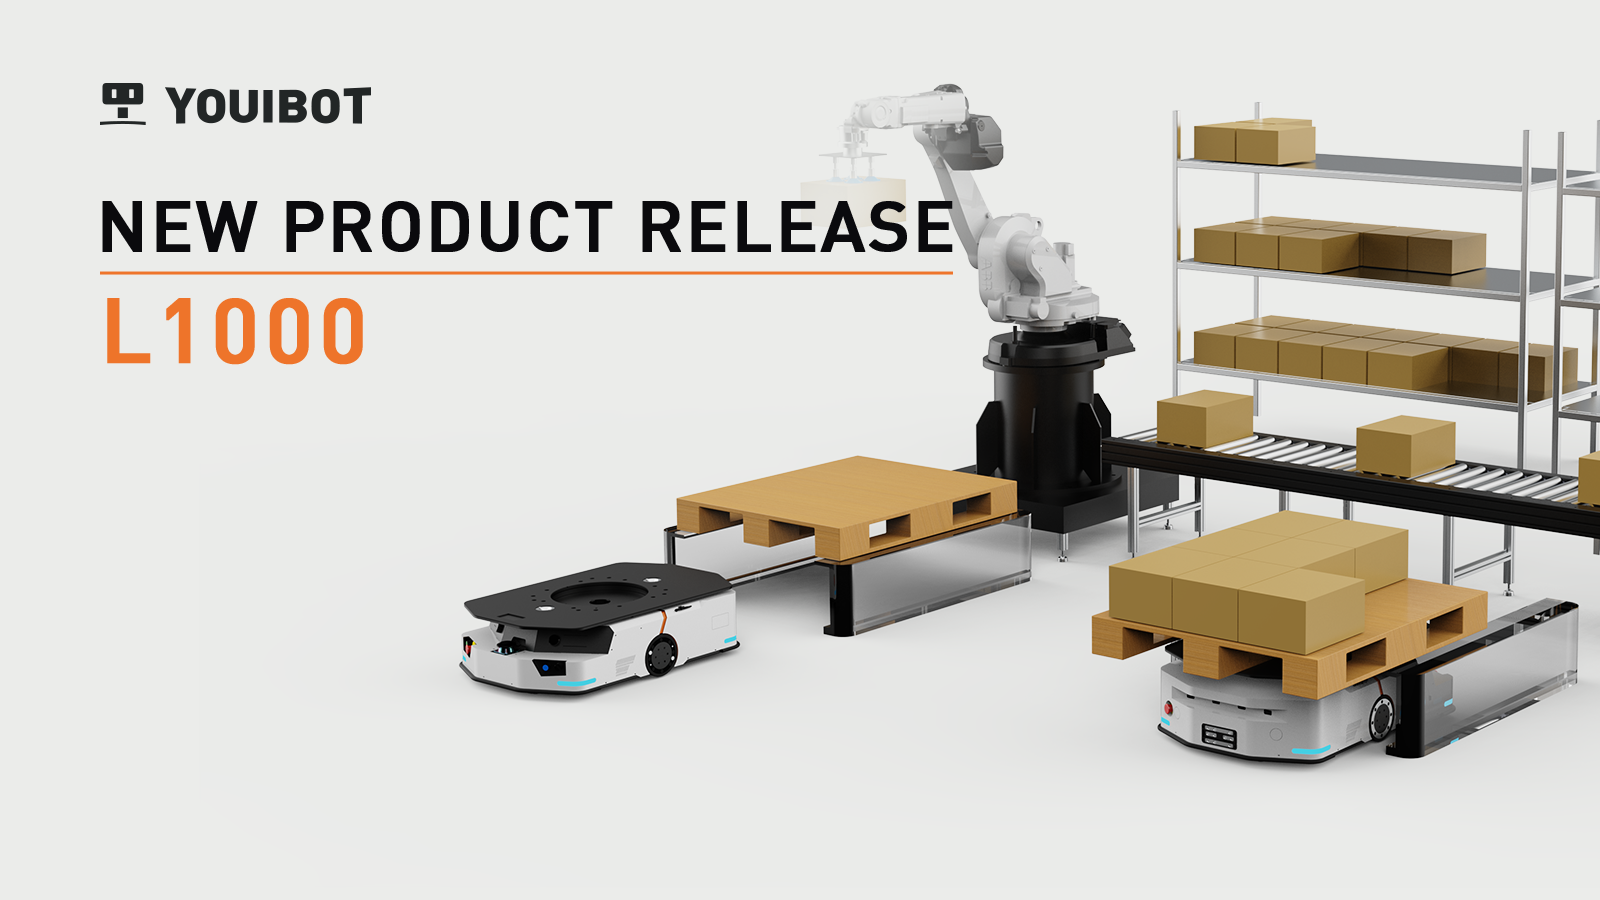 Live Webinar：Youibot Robotics' New Product L1000 AMR Release!